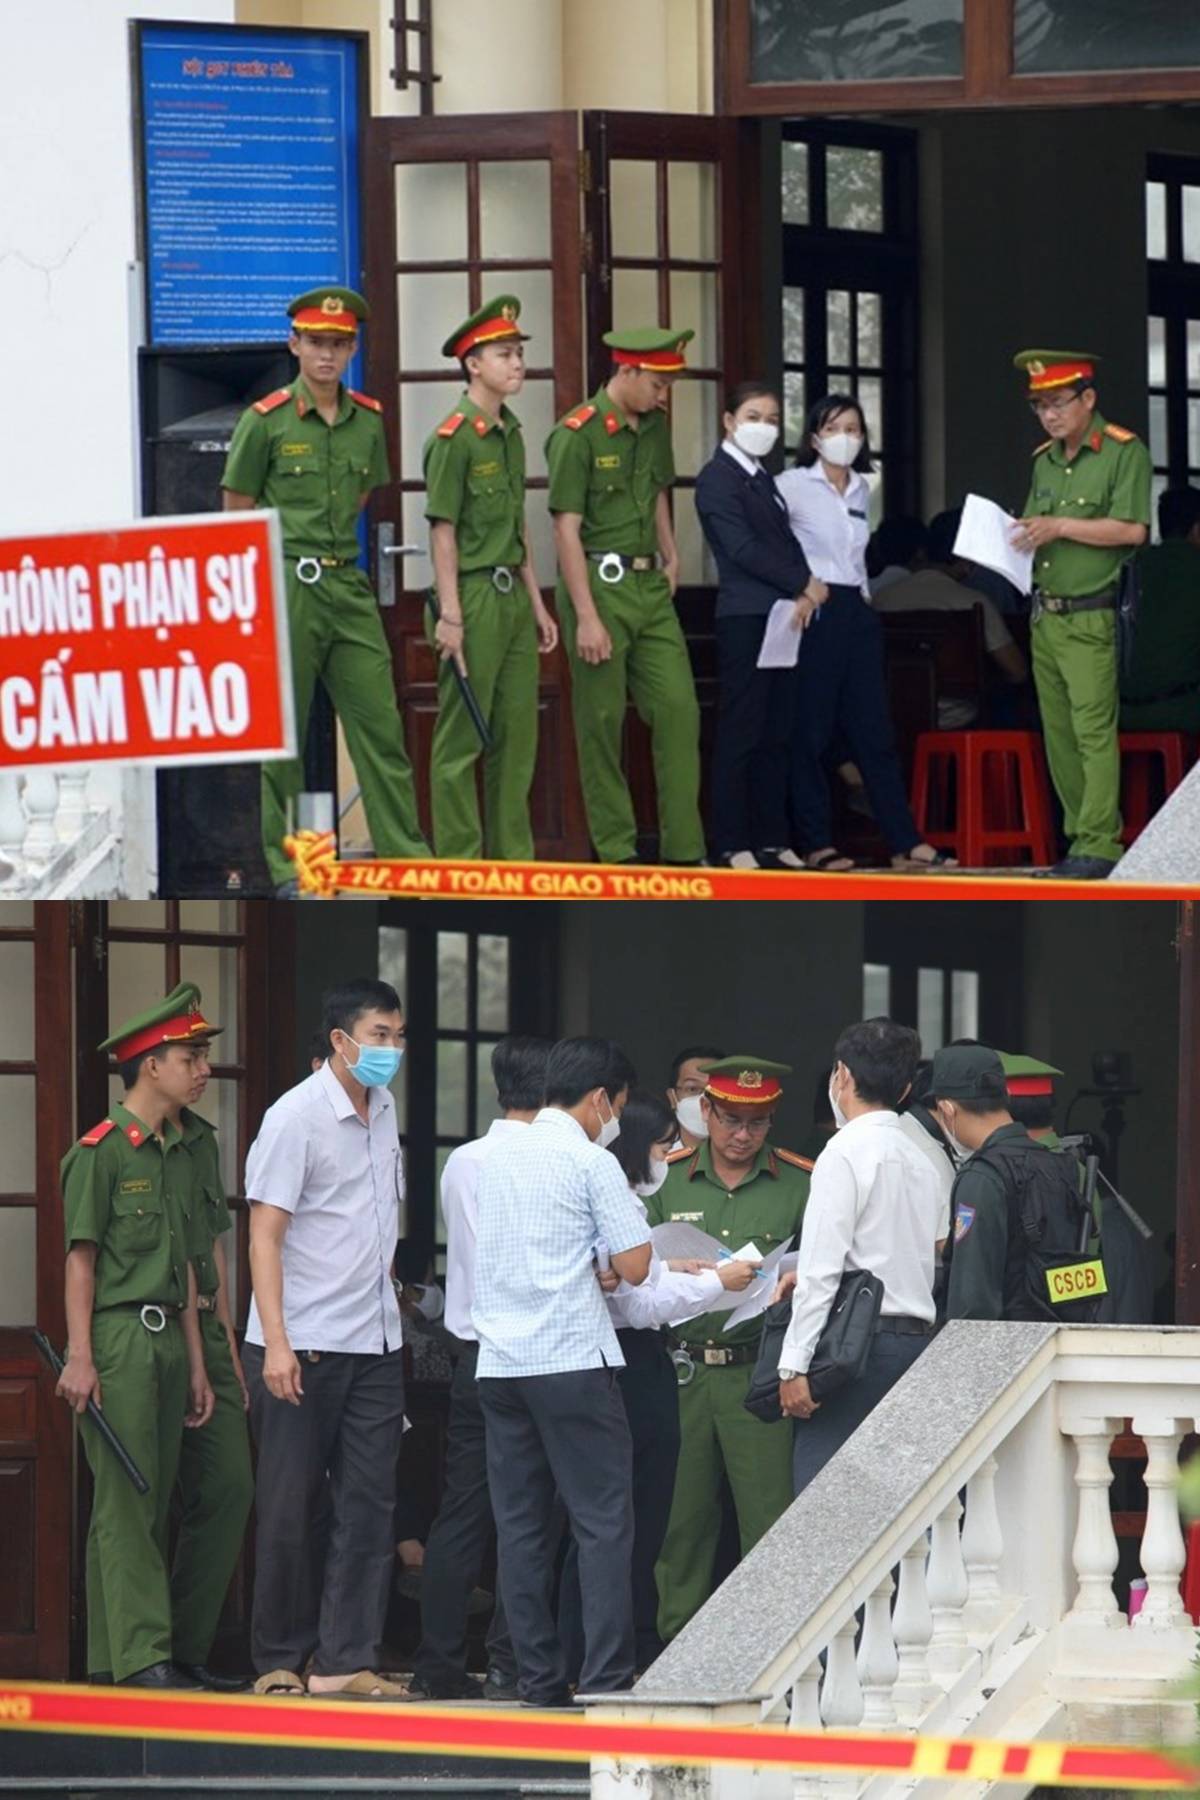 TRỰC TIẾP phiên xử Tịnh Thất Bồng Lai sáng nay: 'Thầy ông nội' lộ diện hốc rộc, Youtuber đông như kiến, an ninh siết chặt